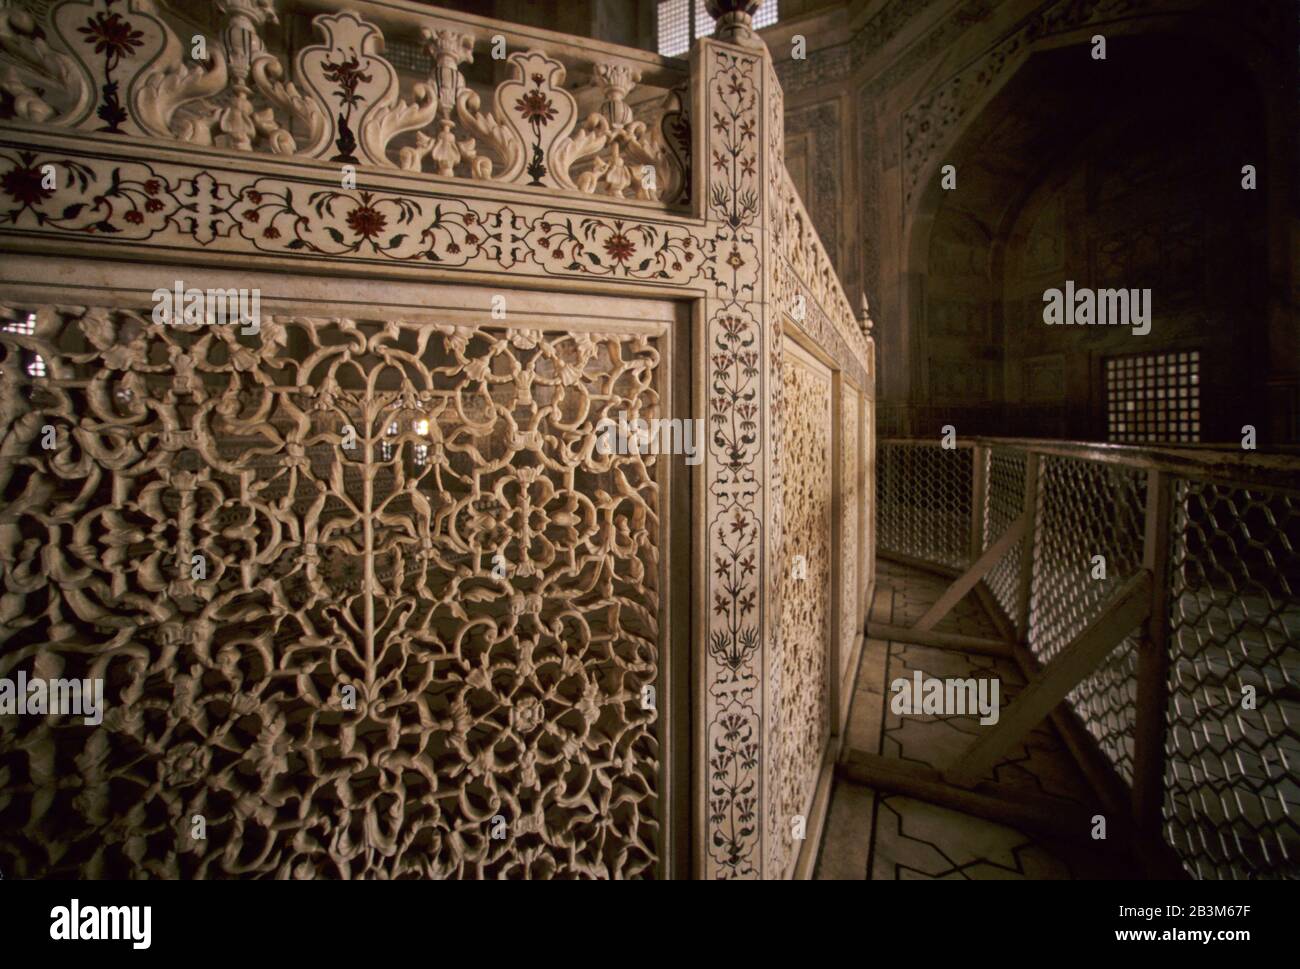 Im Inneren jali Werke von Taj mahal Seventh Wonder of The World, Agra, Uttar Pradesh, Indien, Asien Stockfoto